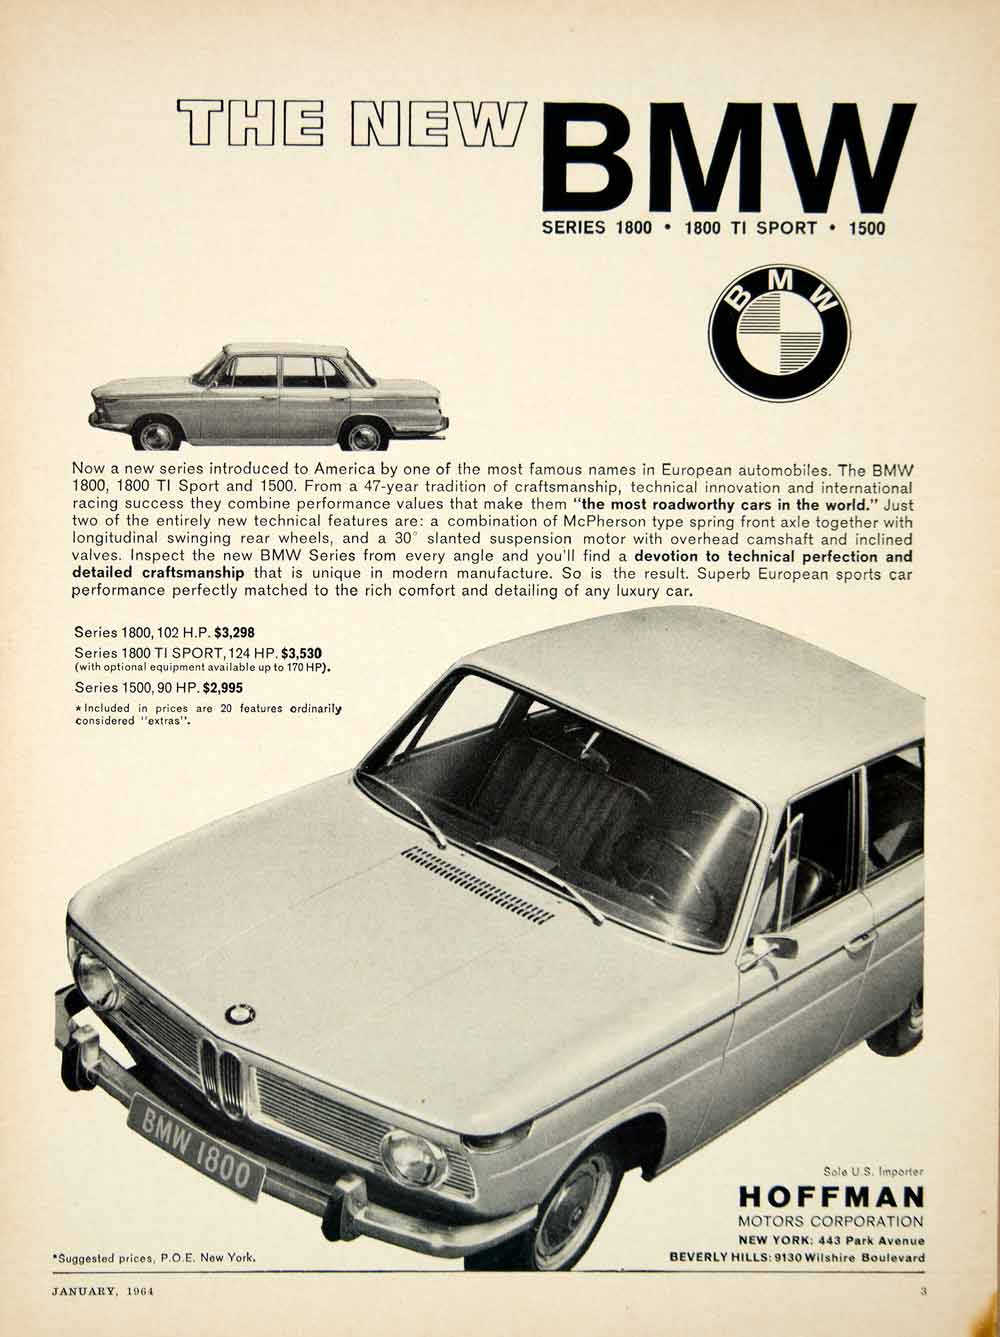 1964 Ad BMW 1800 Series 4 Door Sedan 1.8L I4 Engine TI Sport German Import YCD3